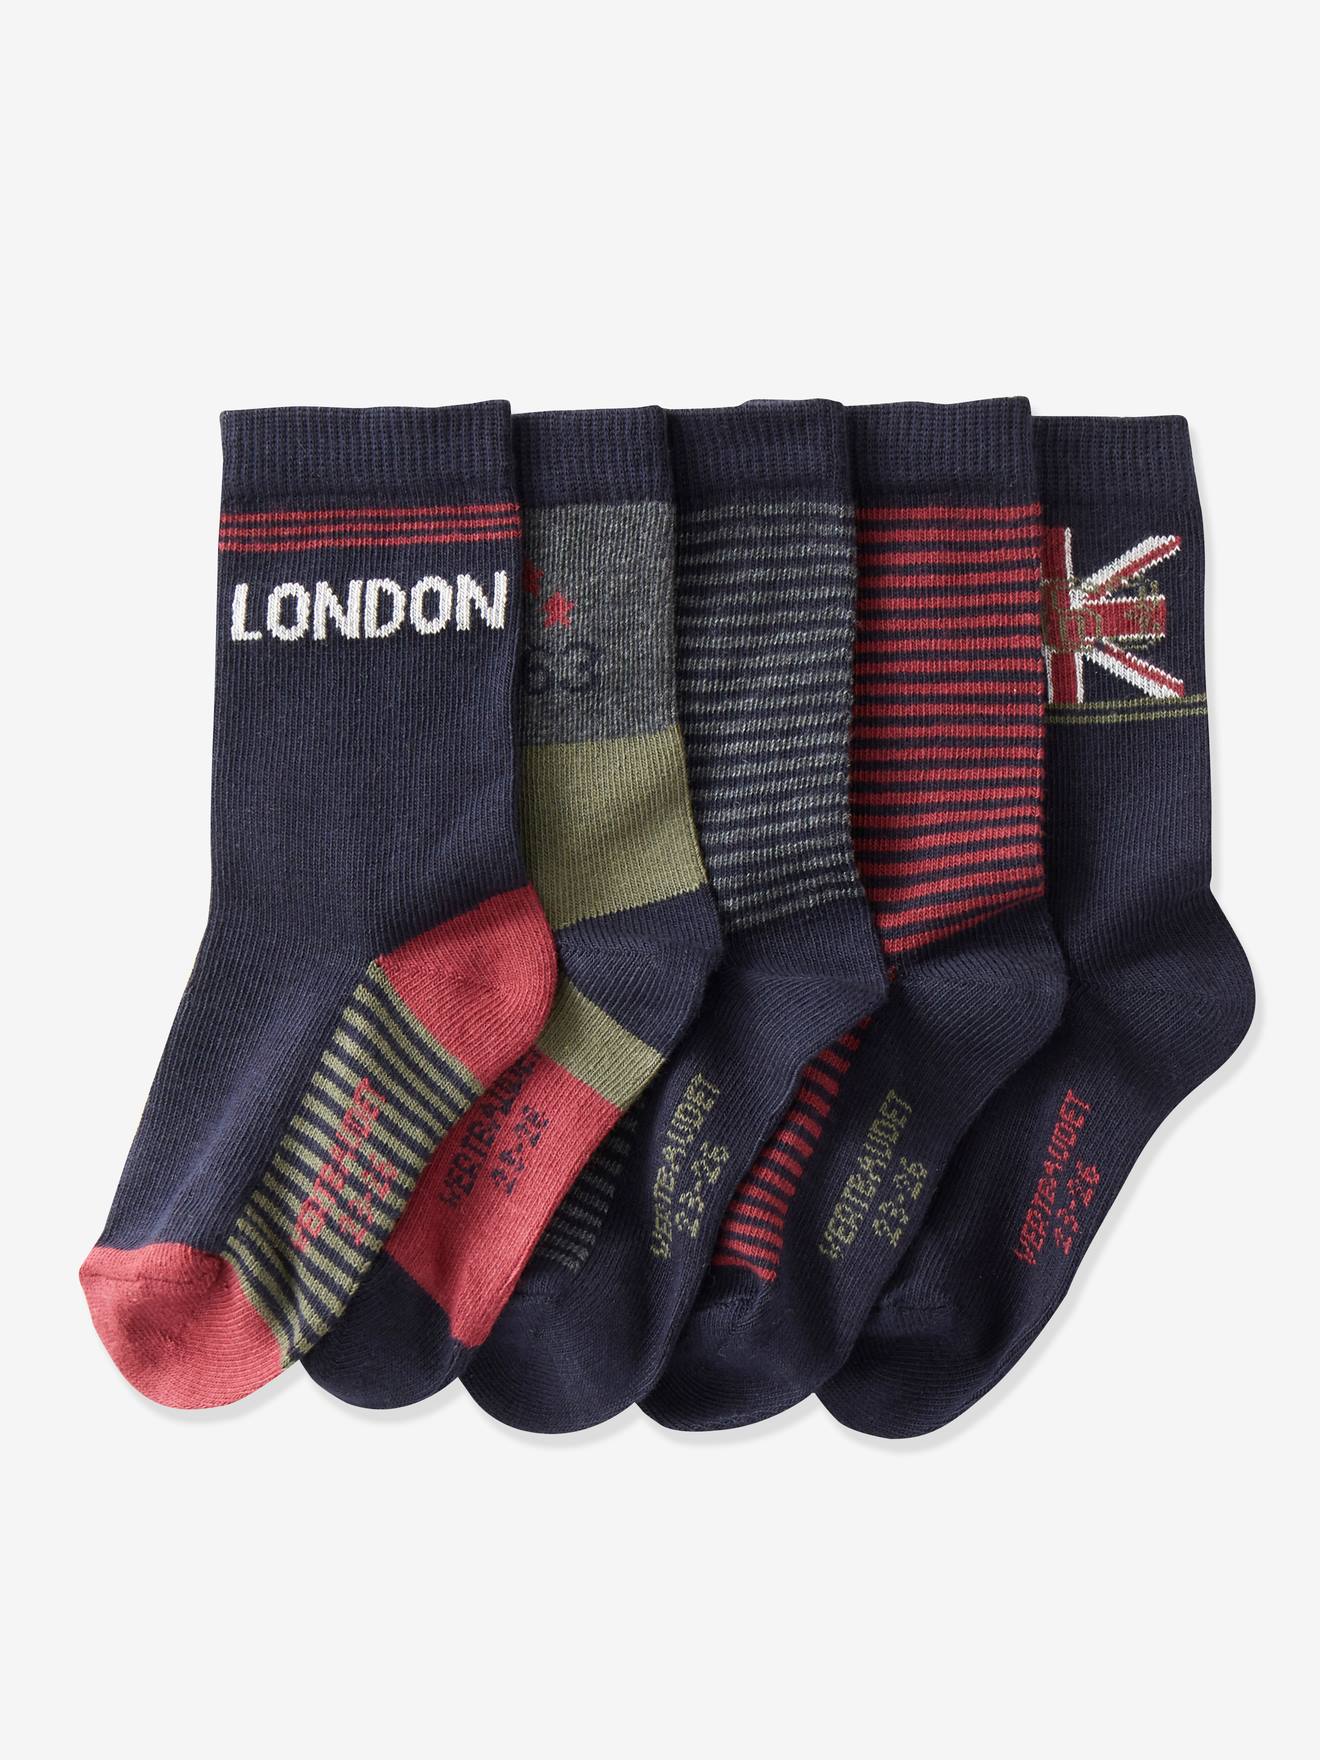 Lot de 5 paires de mi-chaussettes garçon London Oeko-Tex® lot kaki foncé